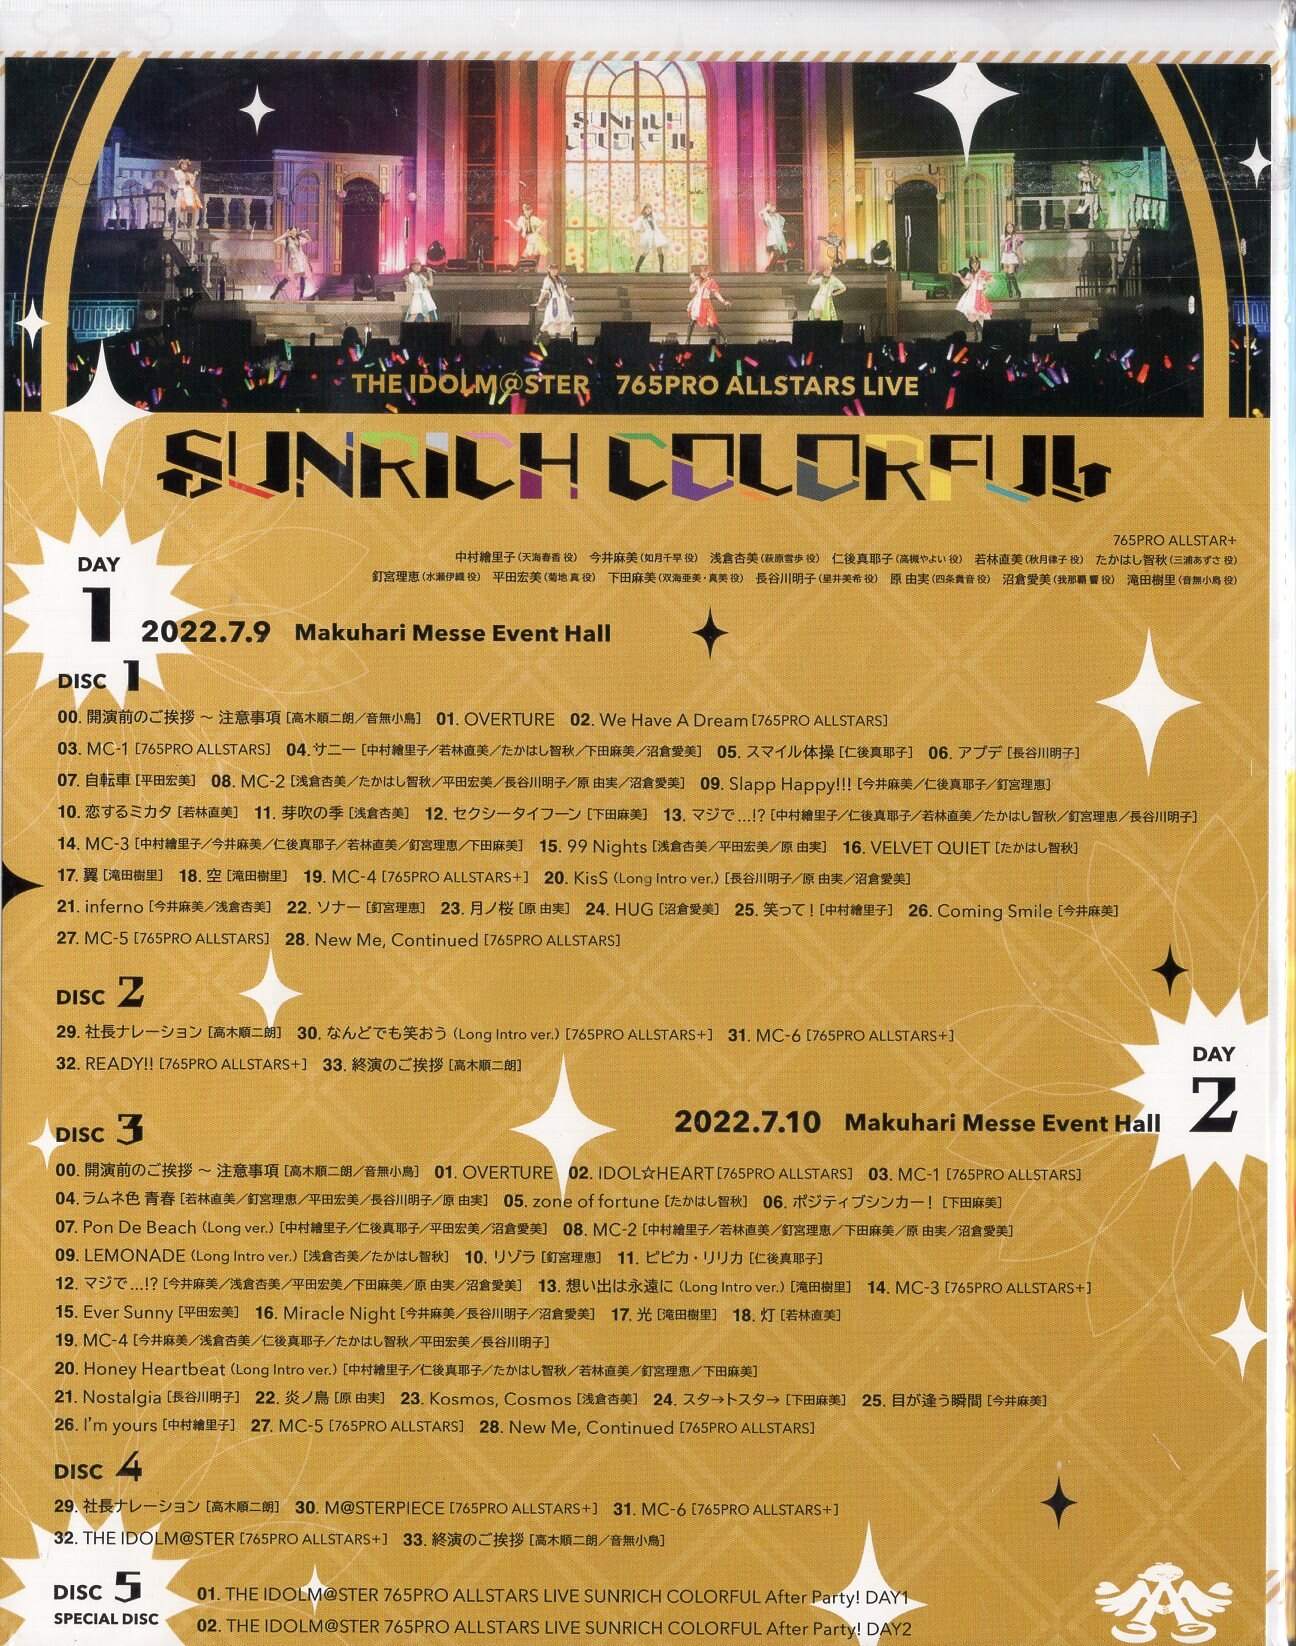 ライブ/イベントBlu-ray 初回生産限定版)SUNRICH COLORFUL LIVE Blu